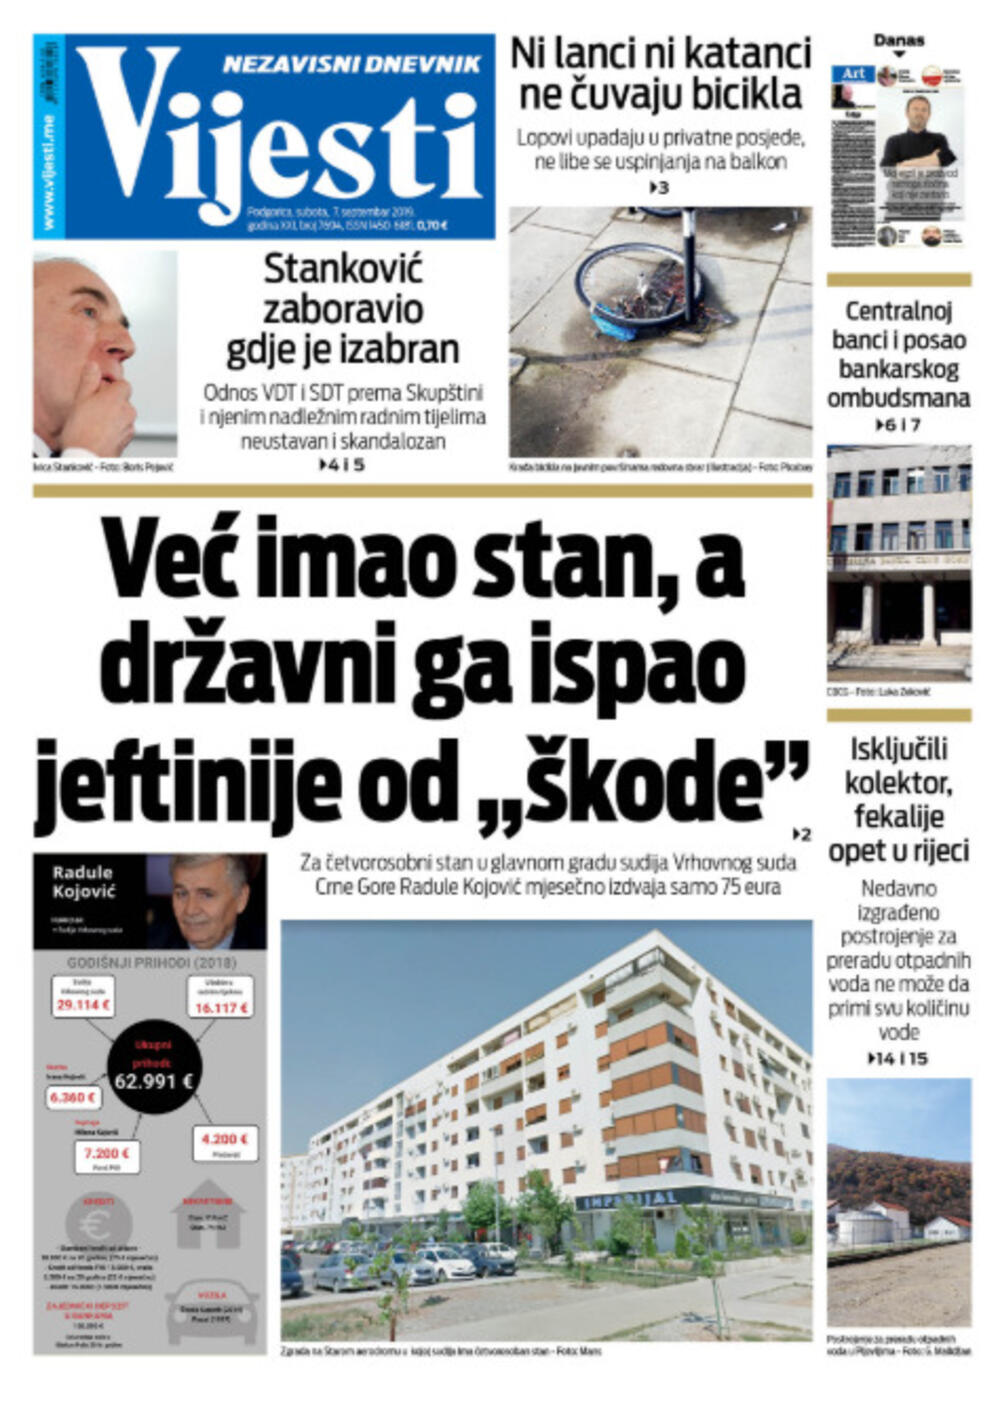 Naslovna strana "Vijesti" za 7. septembar